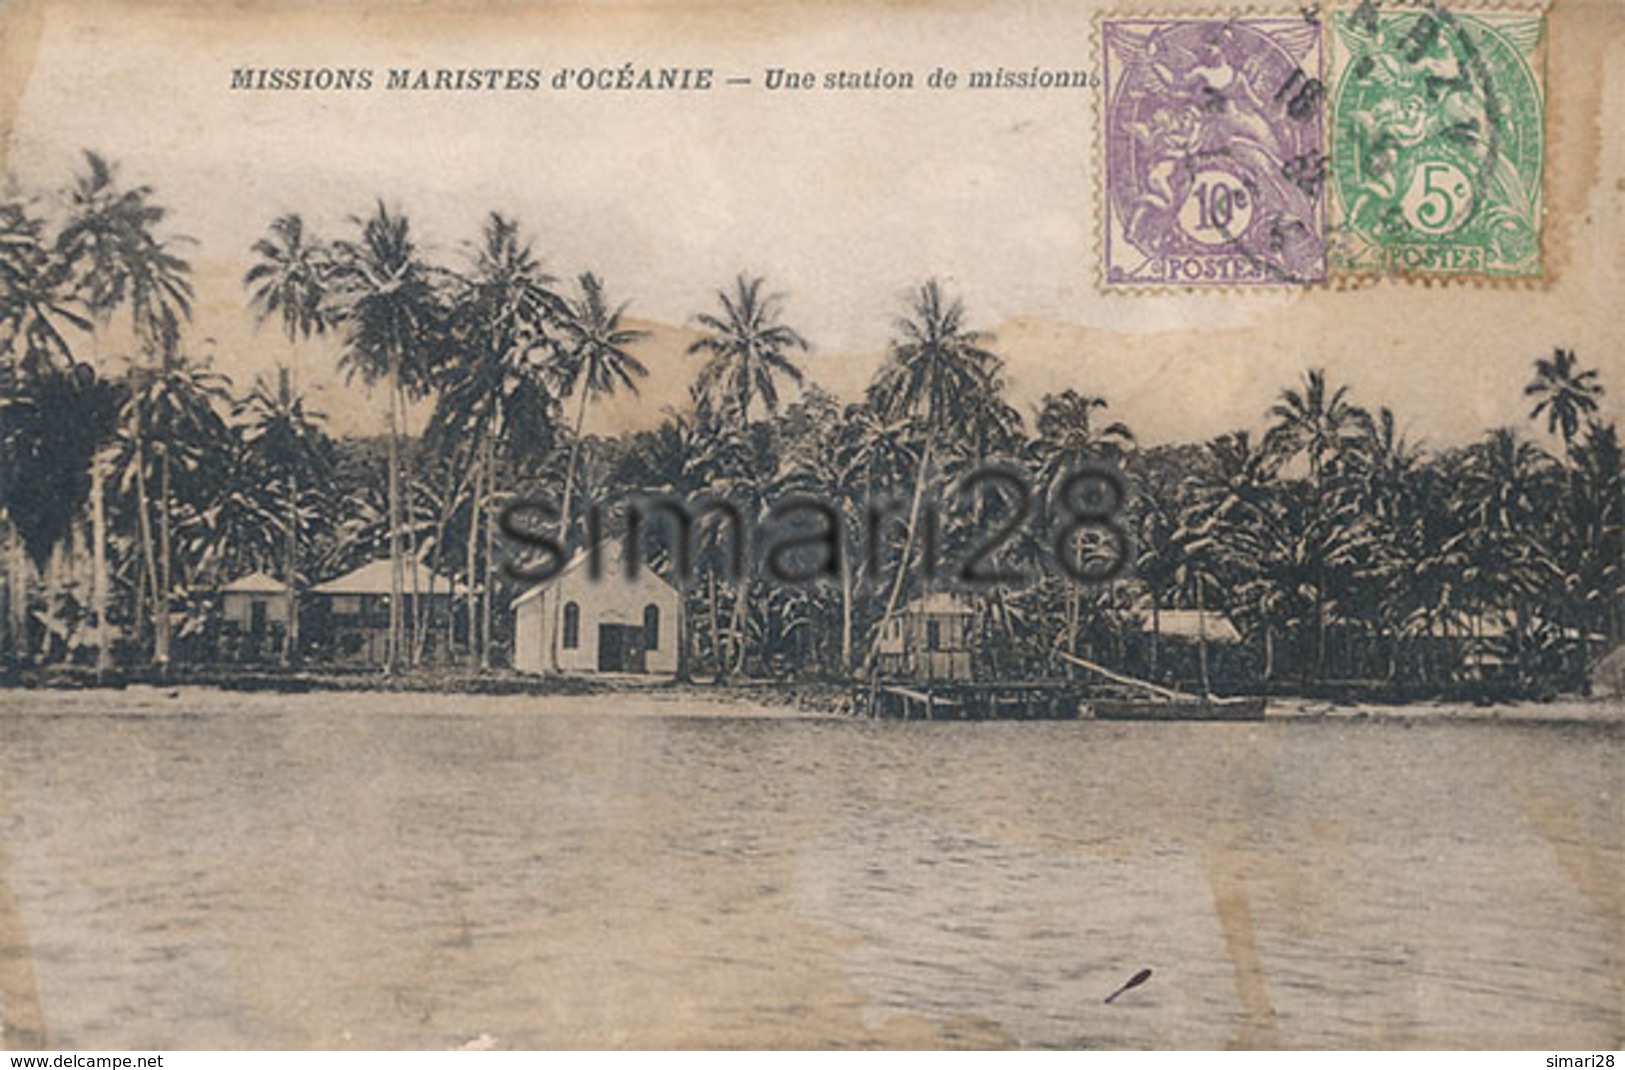 MISSIONS MARISTES D'OCEANIE - UNE STATION DE MISSIONNAIRES AUX SALOMON - Islas Salomon